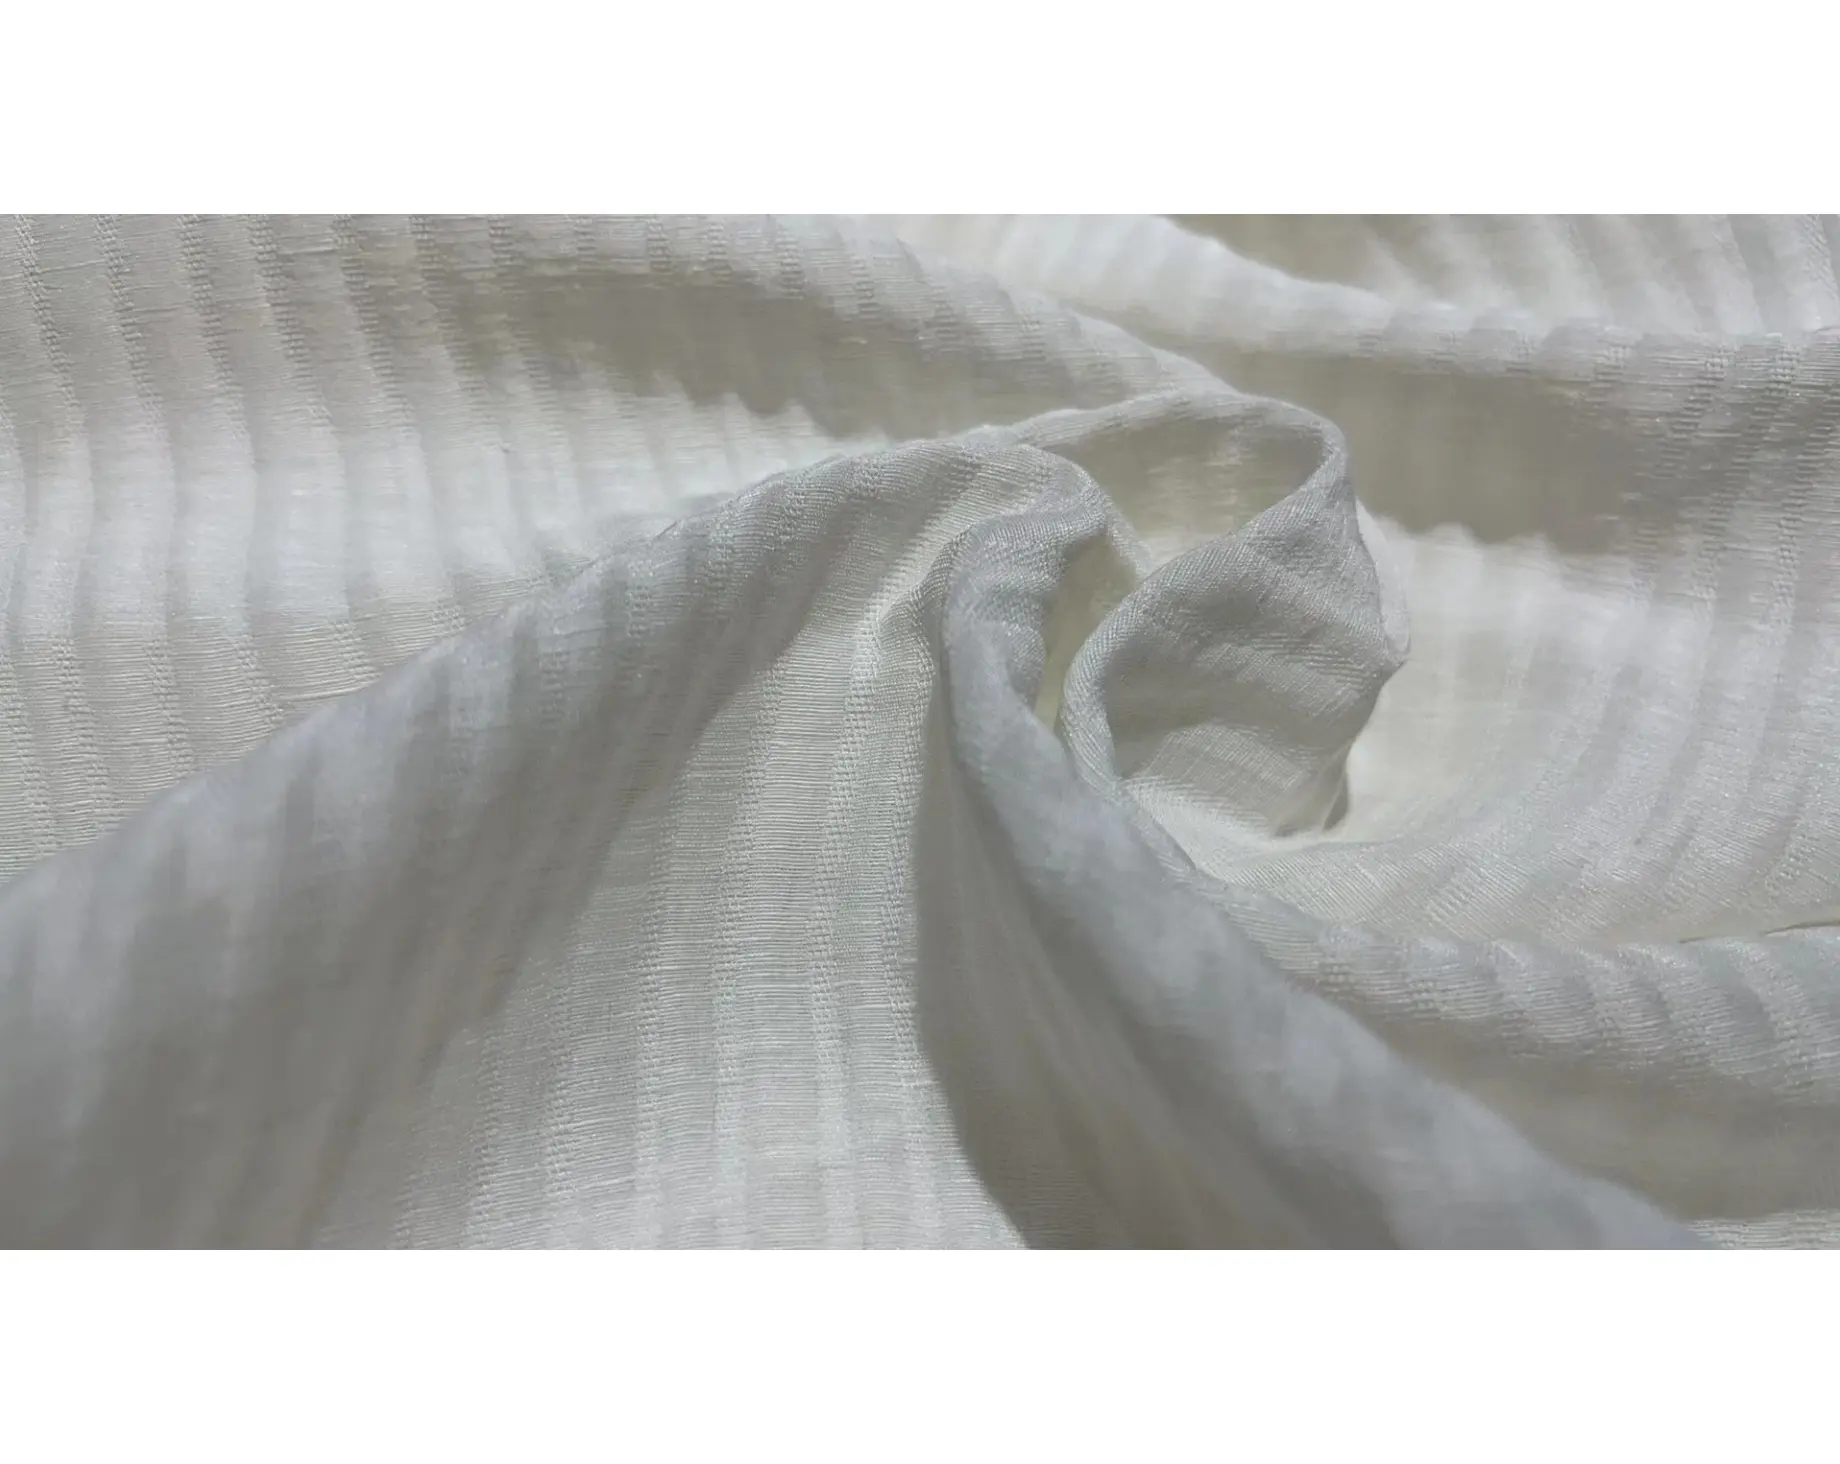 Ipek keten 28mm ipek jakarlı krep kumaş kabartmalı krep ipek kumaş giysi için kullanılan